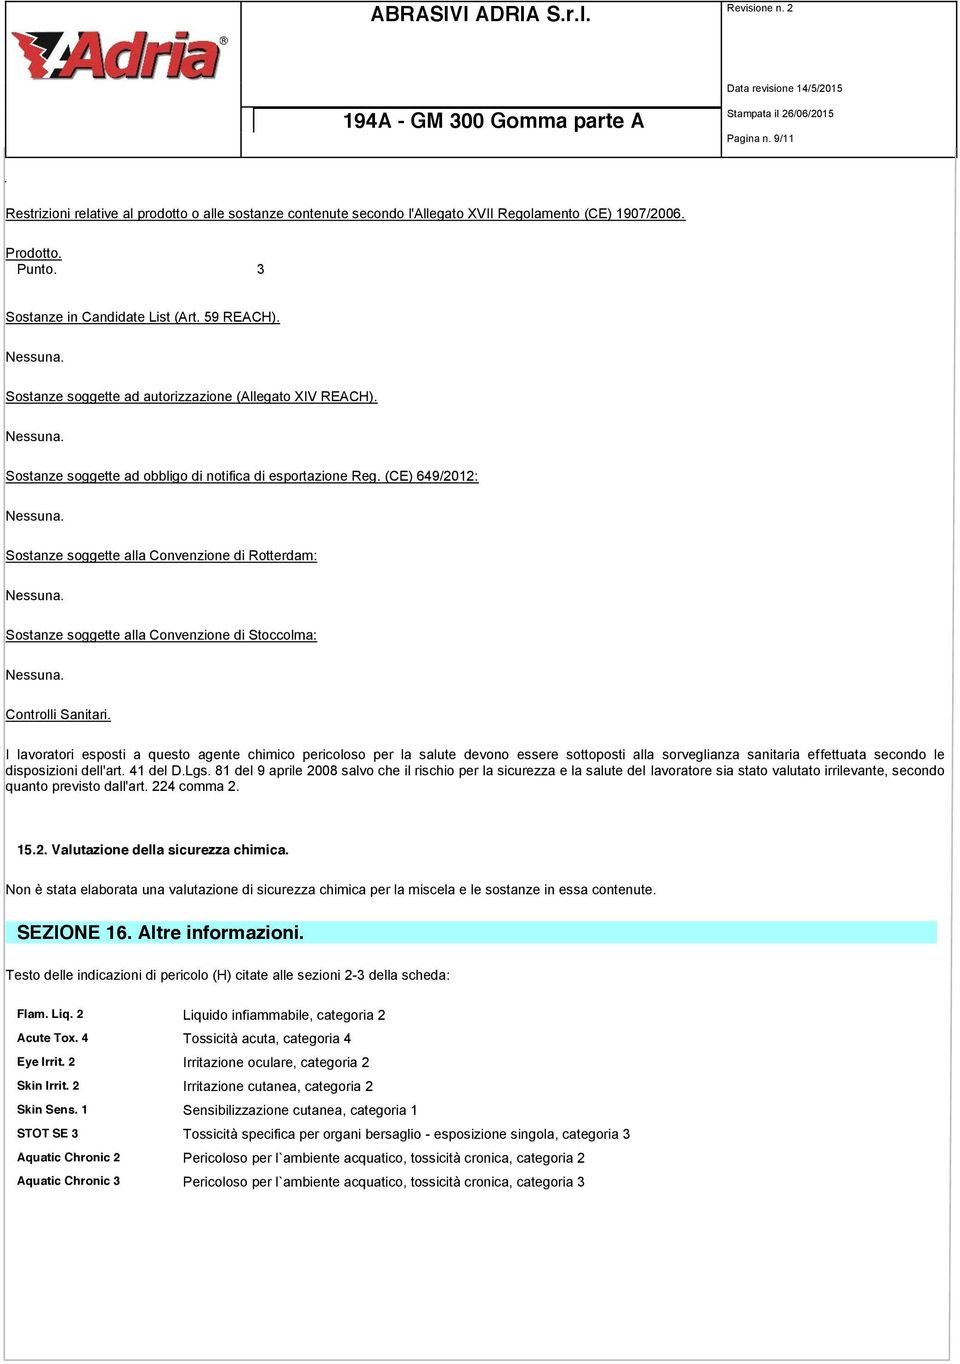 (CE) 649/2012: Sostanze soggette alla Convenzione di Rotterdam: Sostanze soggette alla Convenzione di Stoccolma: Controlli Sanitari.